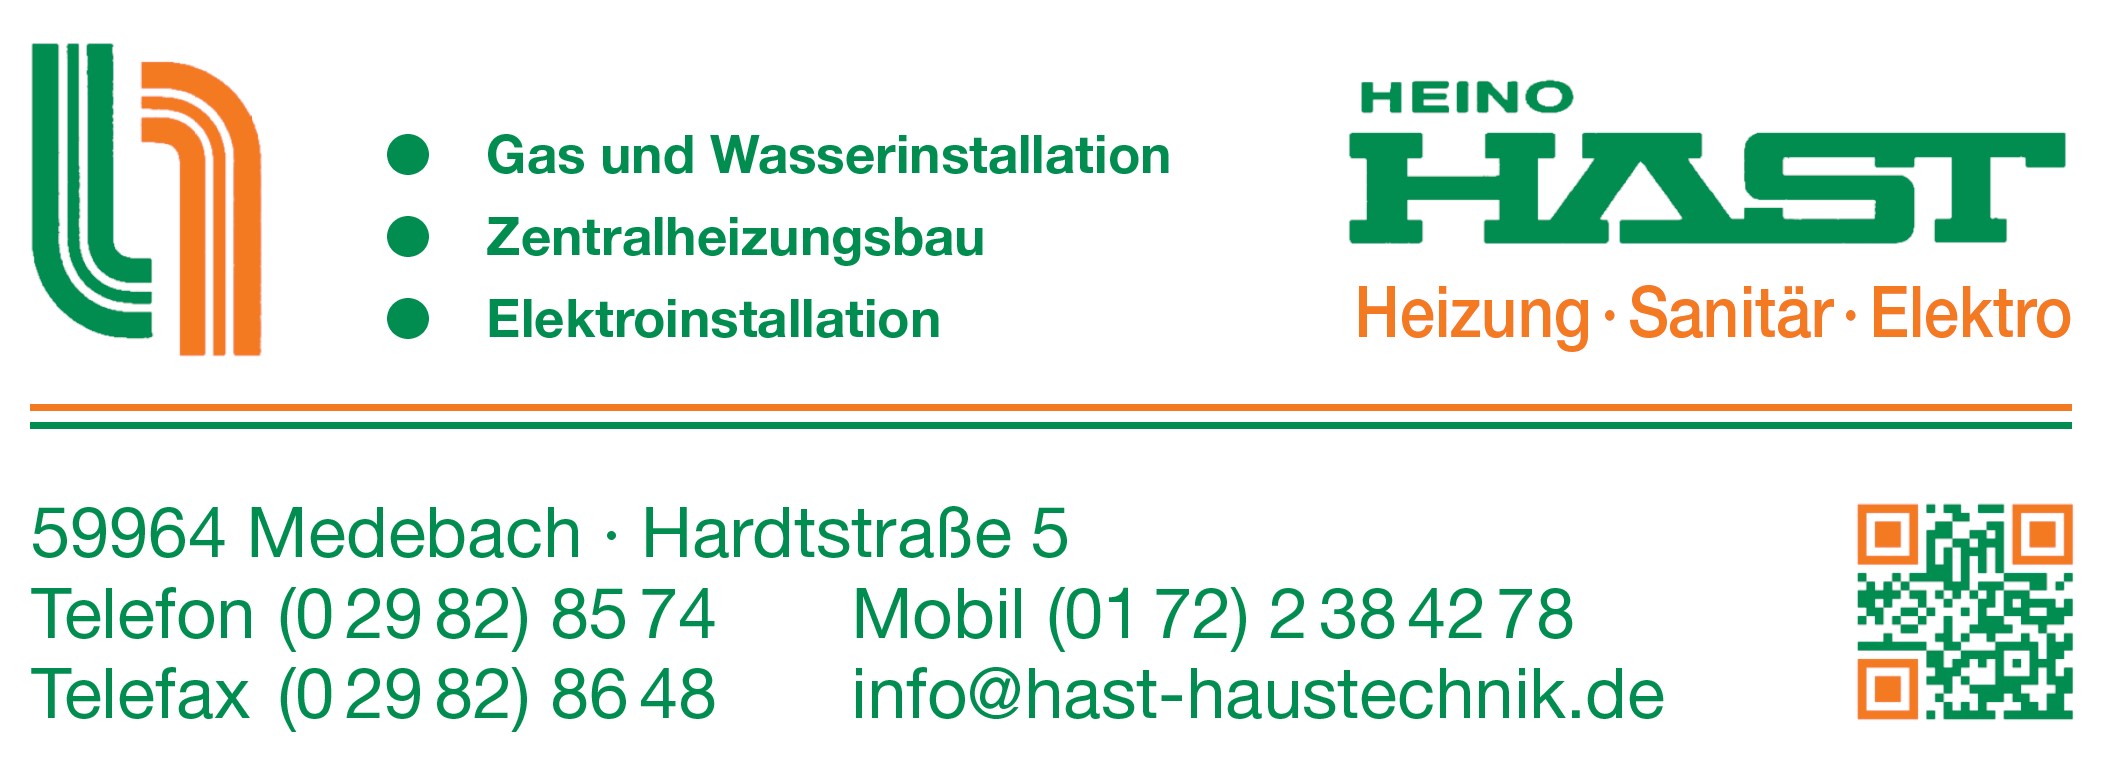 Heino Hast